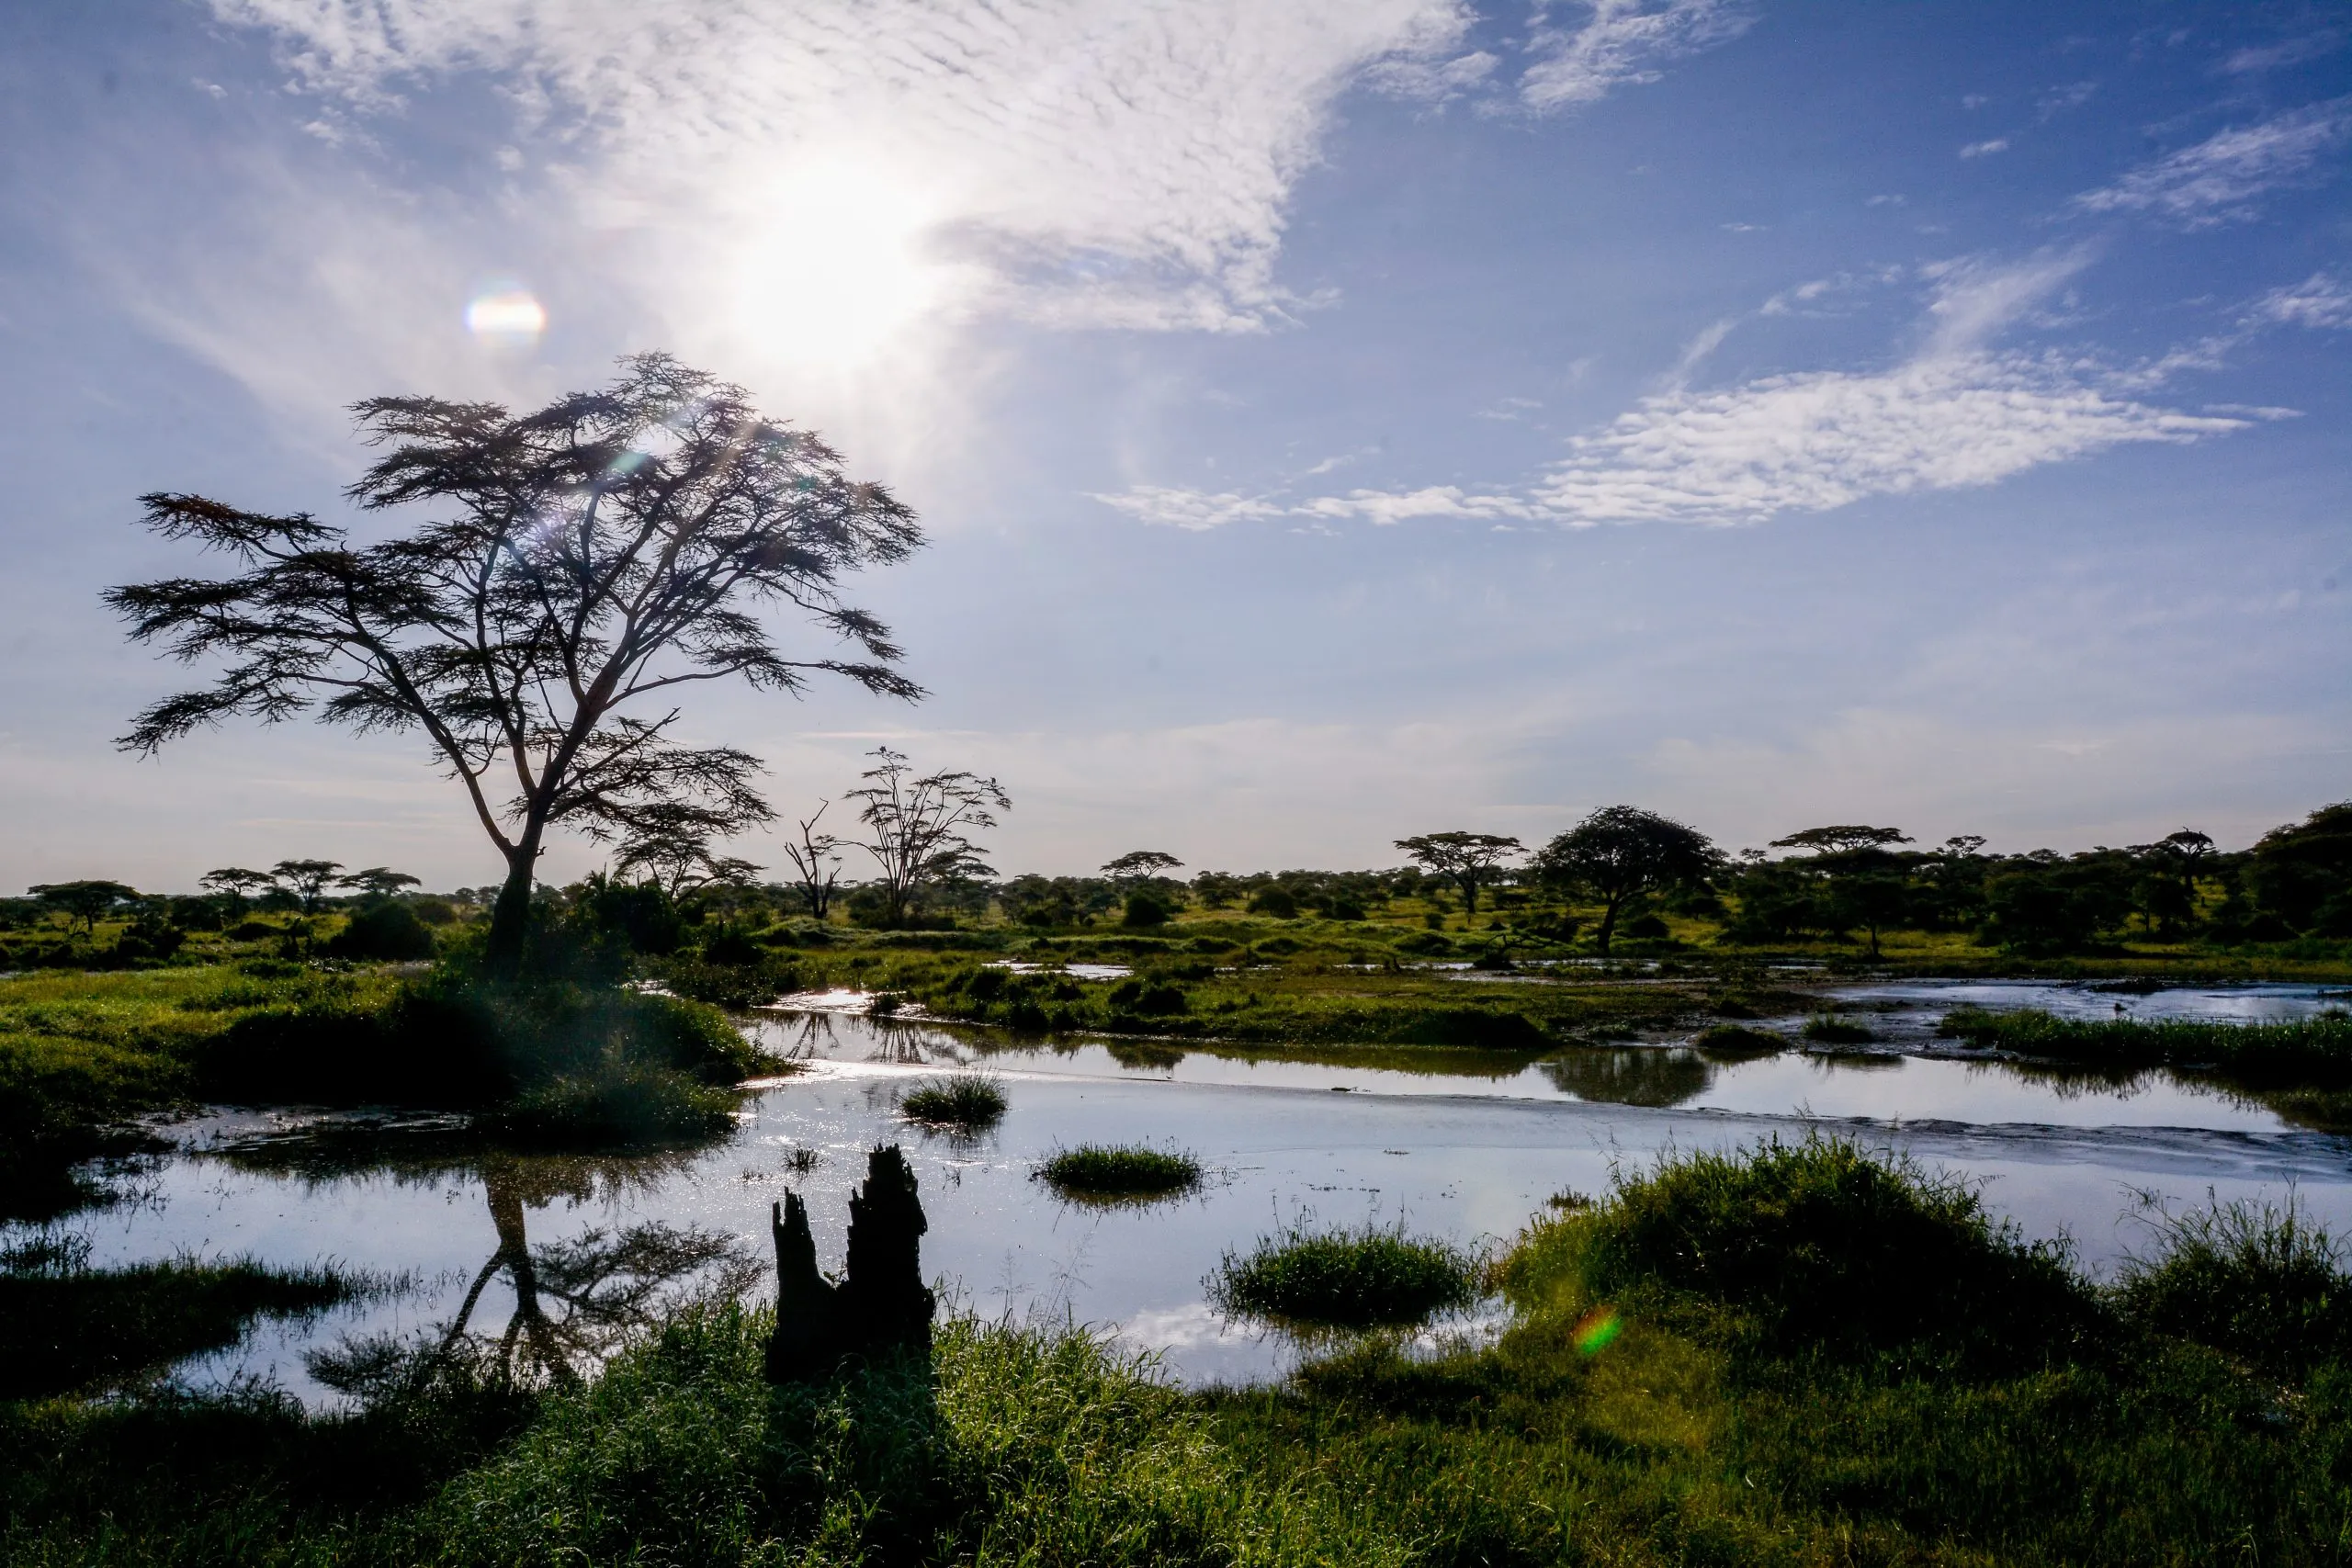 Landscape in Manyara National Park